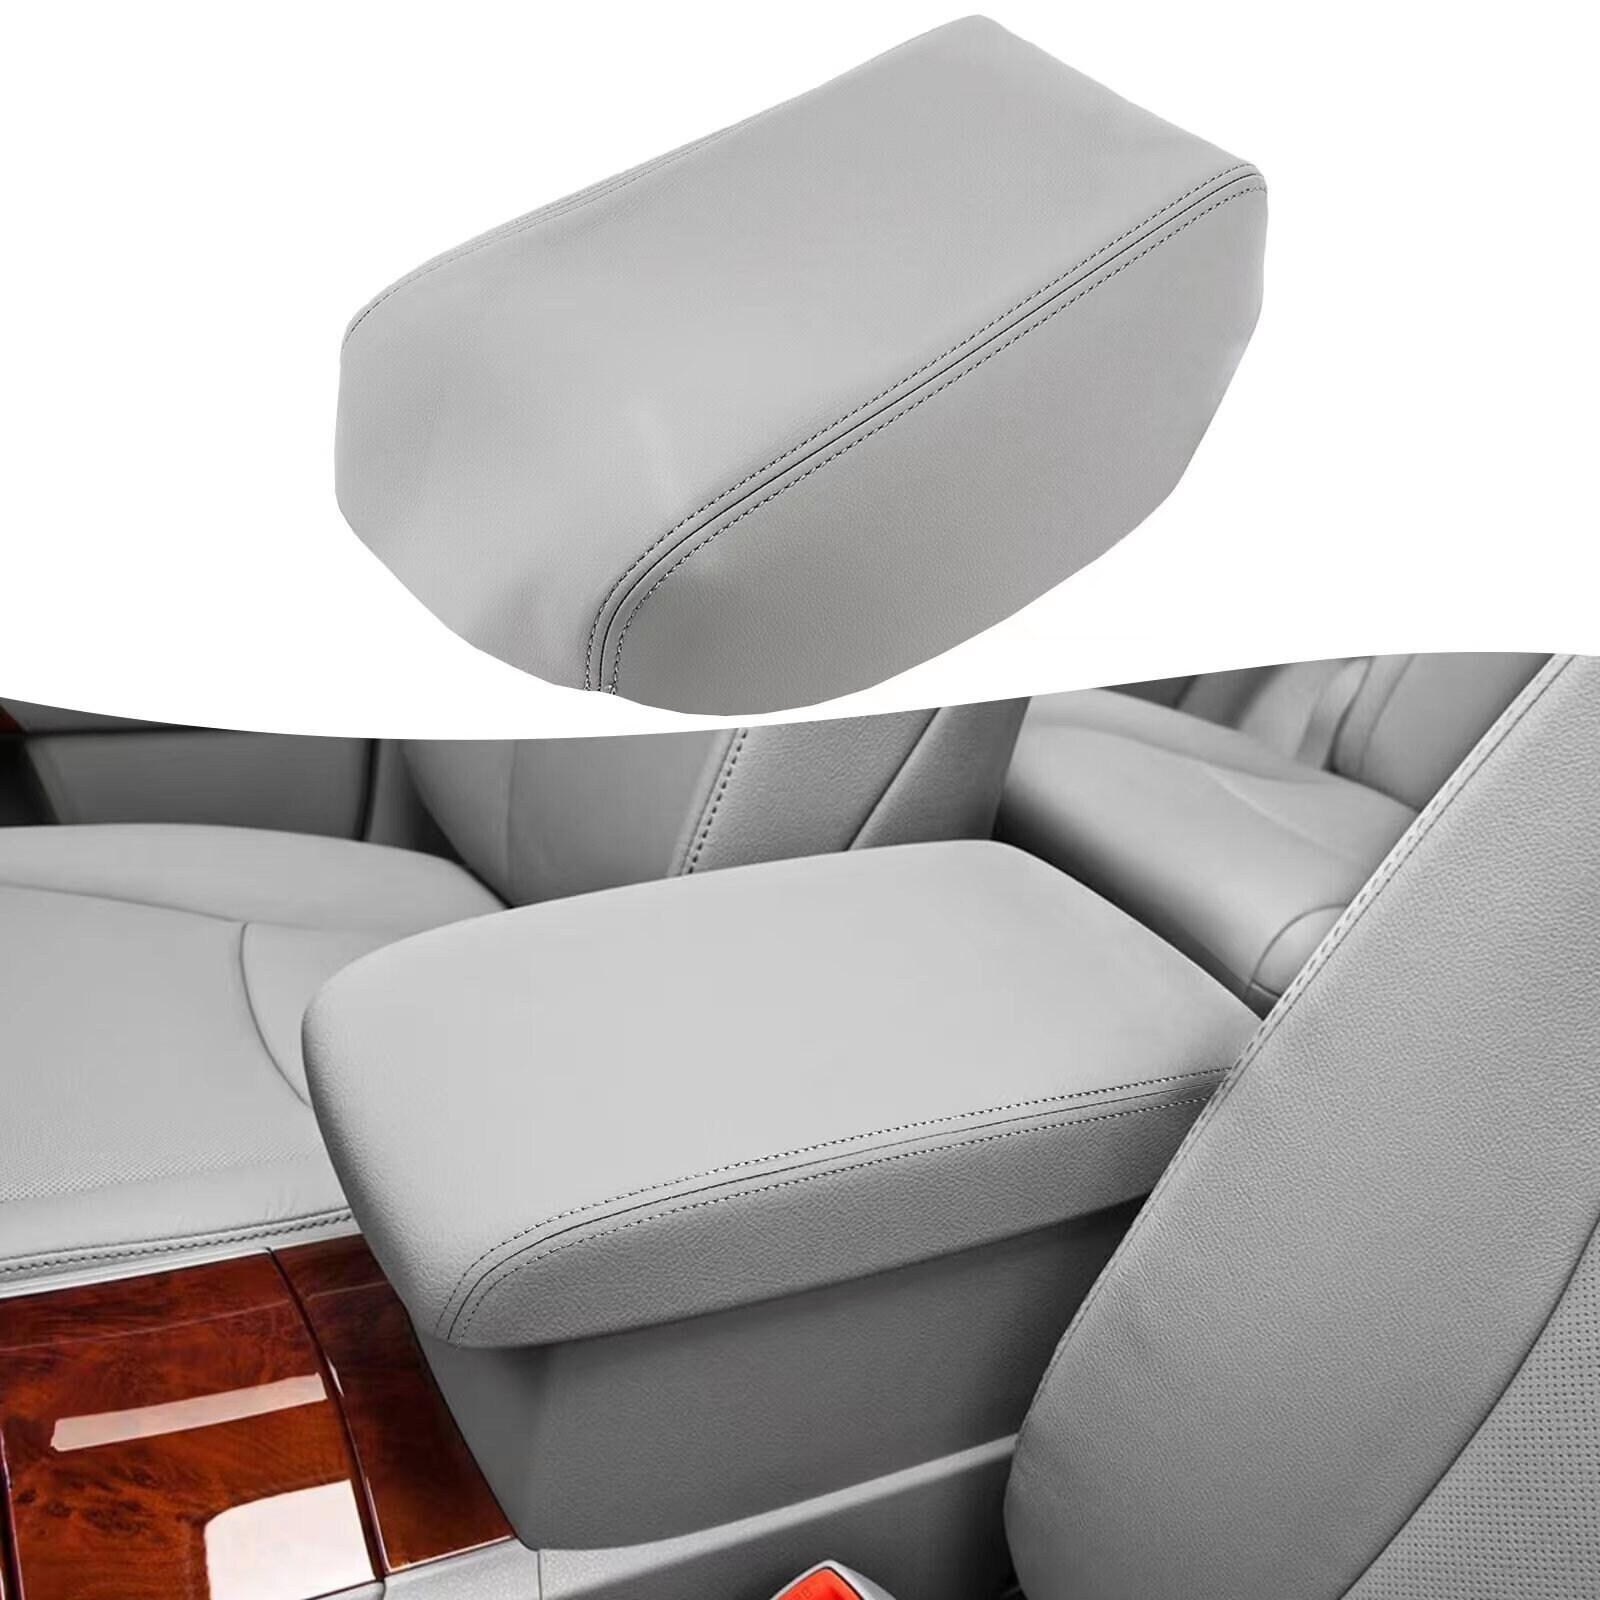 Kaufe PU-Leder Auto Armlehne Polster Bezug Universal Mittelkonsole Box  Cover Sticken Auto Seat Box Schutzkissen